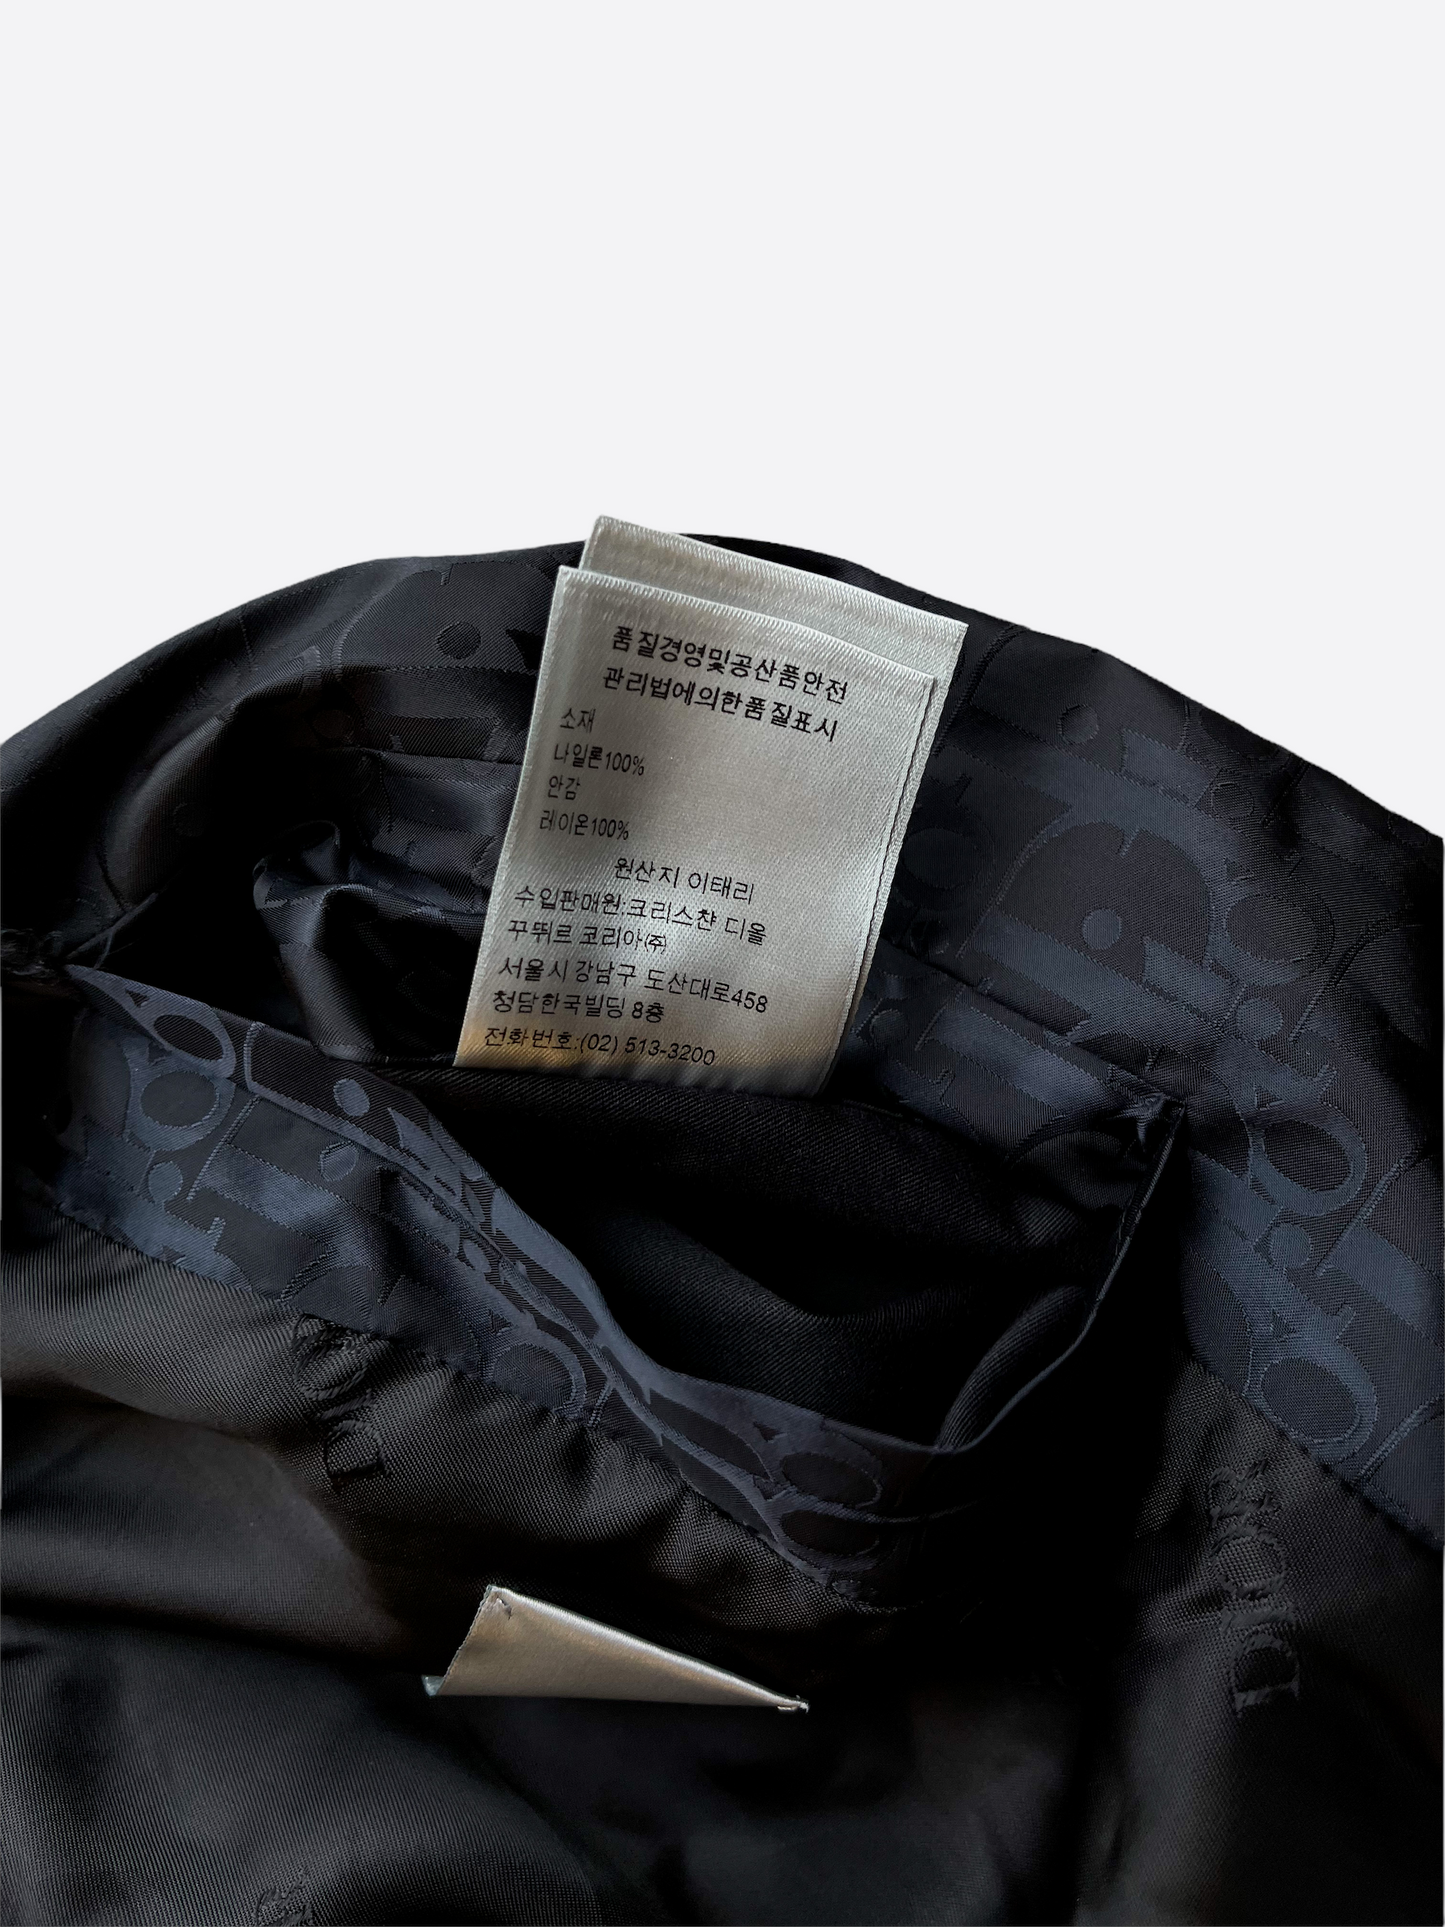 Dior Oblique Black Bomber Jacket